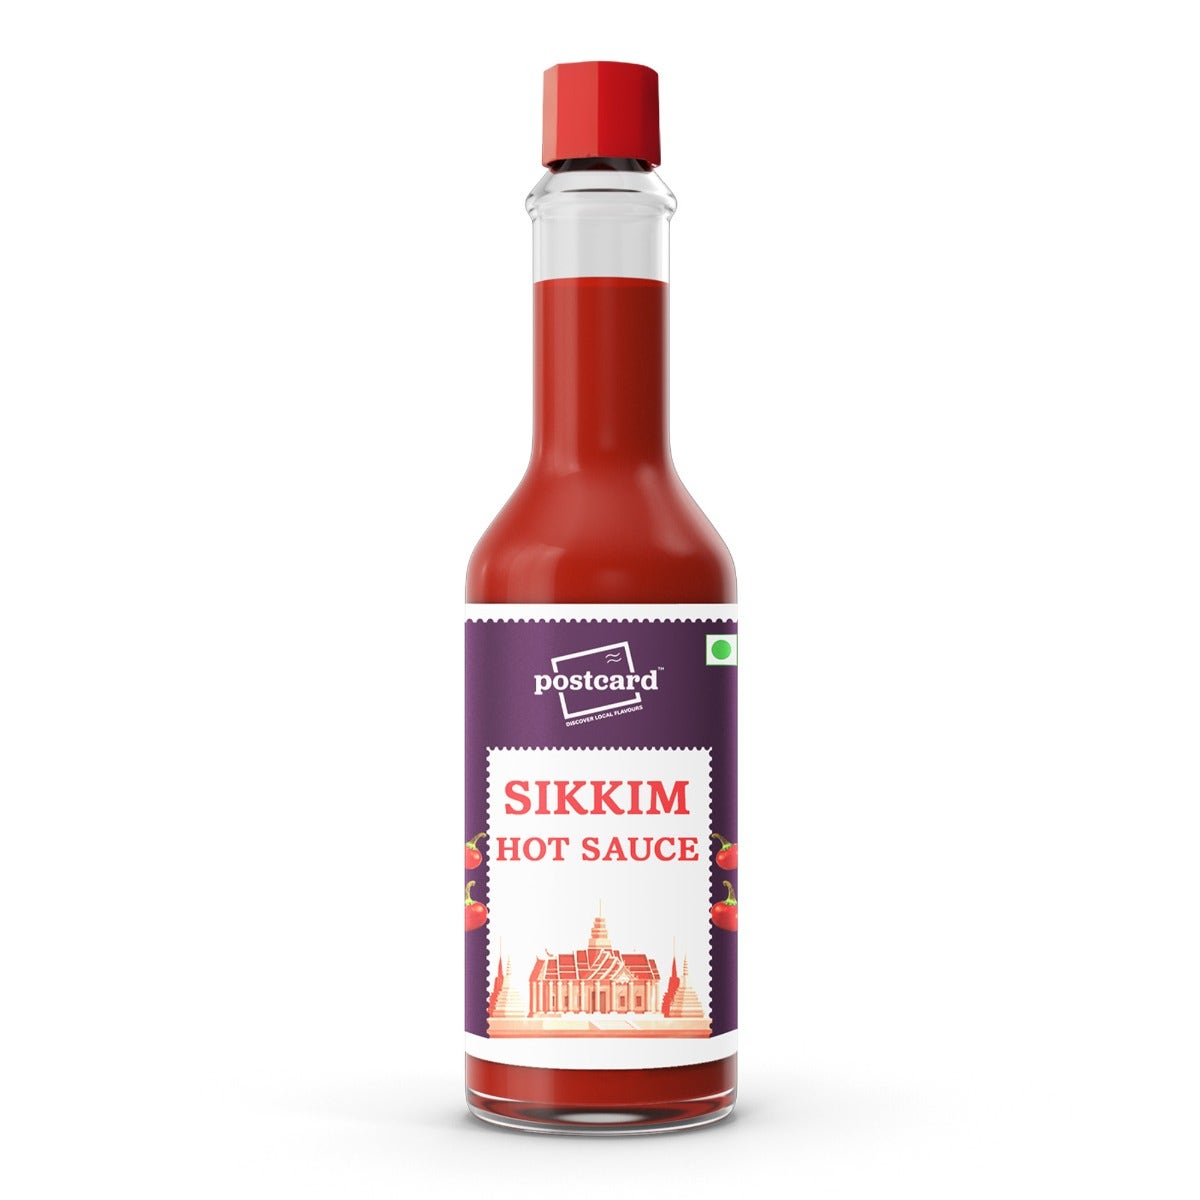 postcard sikkim hot sauce